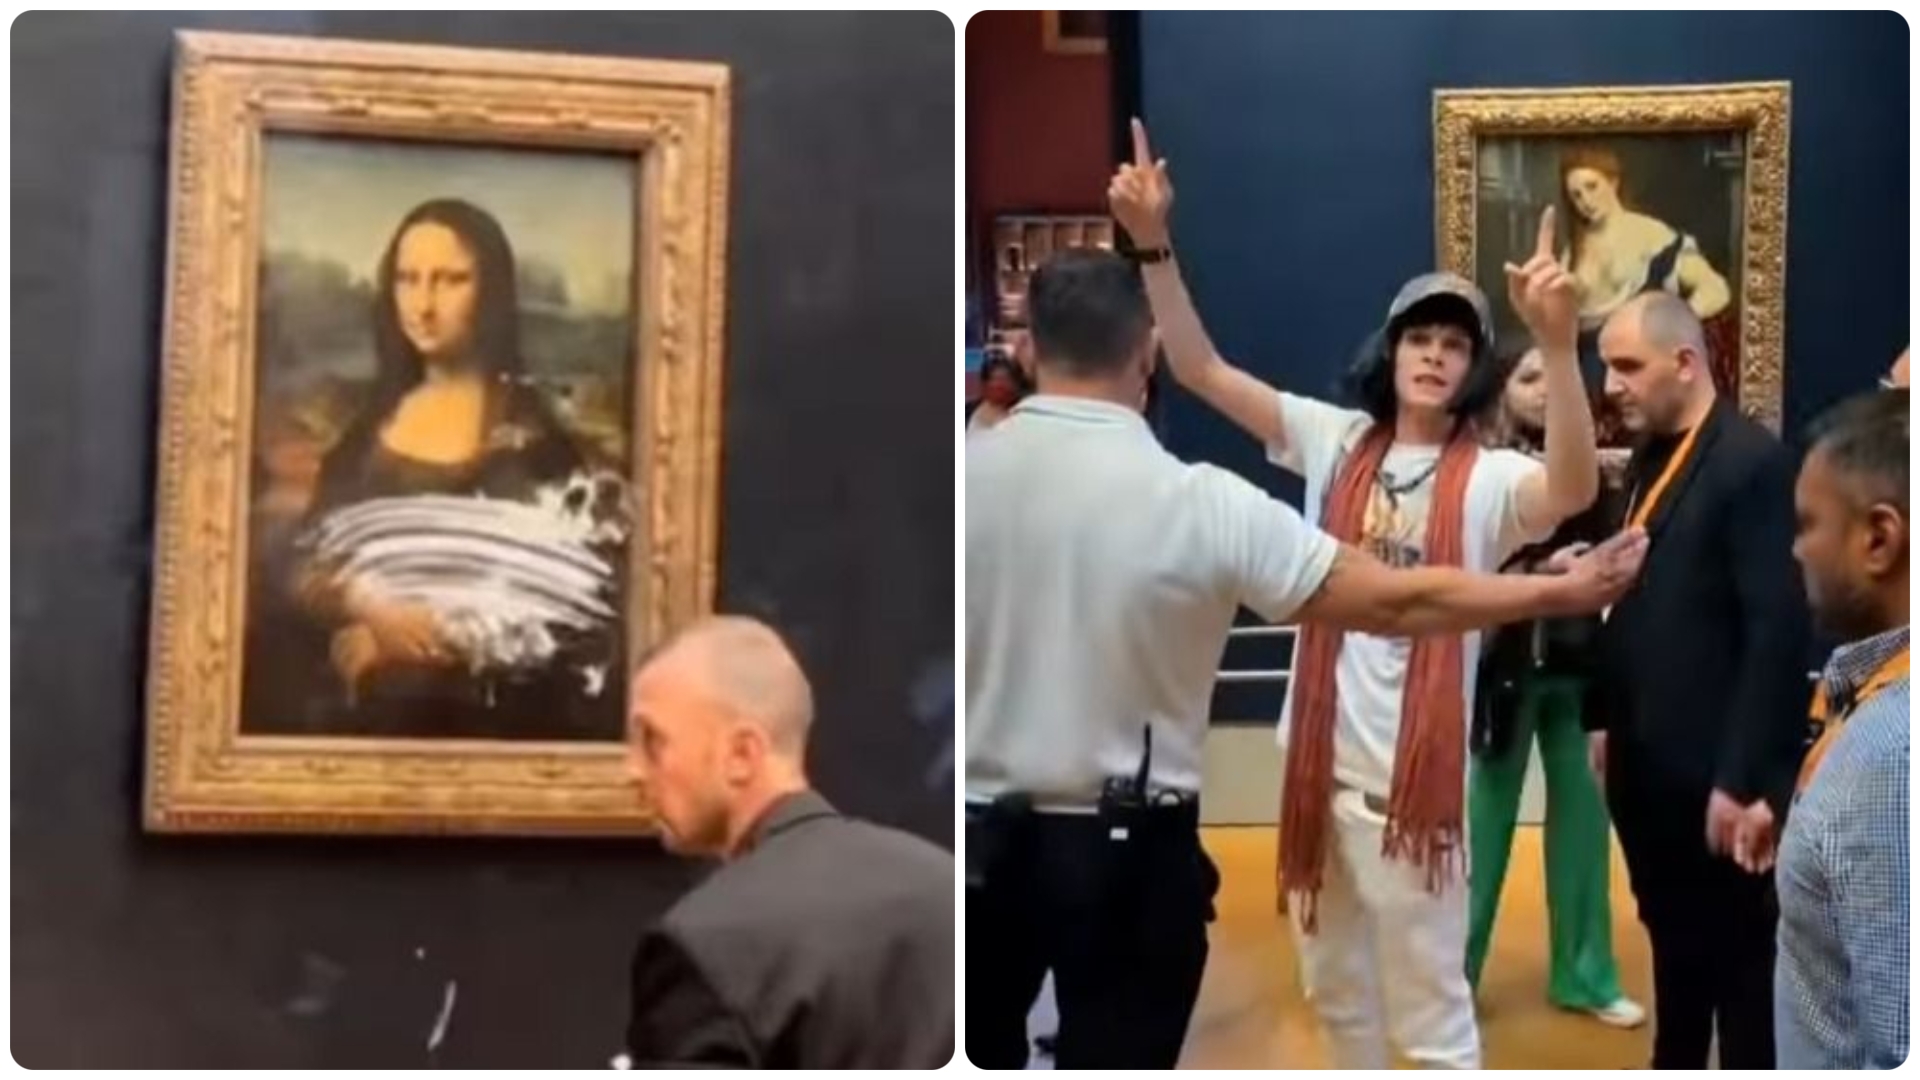 Mona Lisa malekakeangrep: Videoer og detaljer